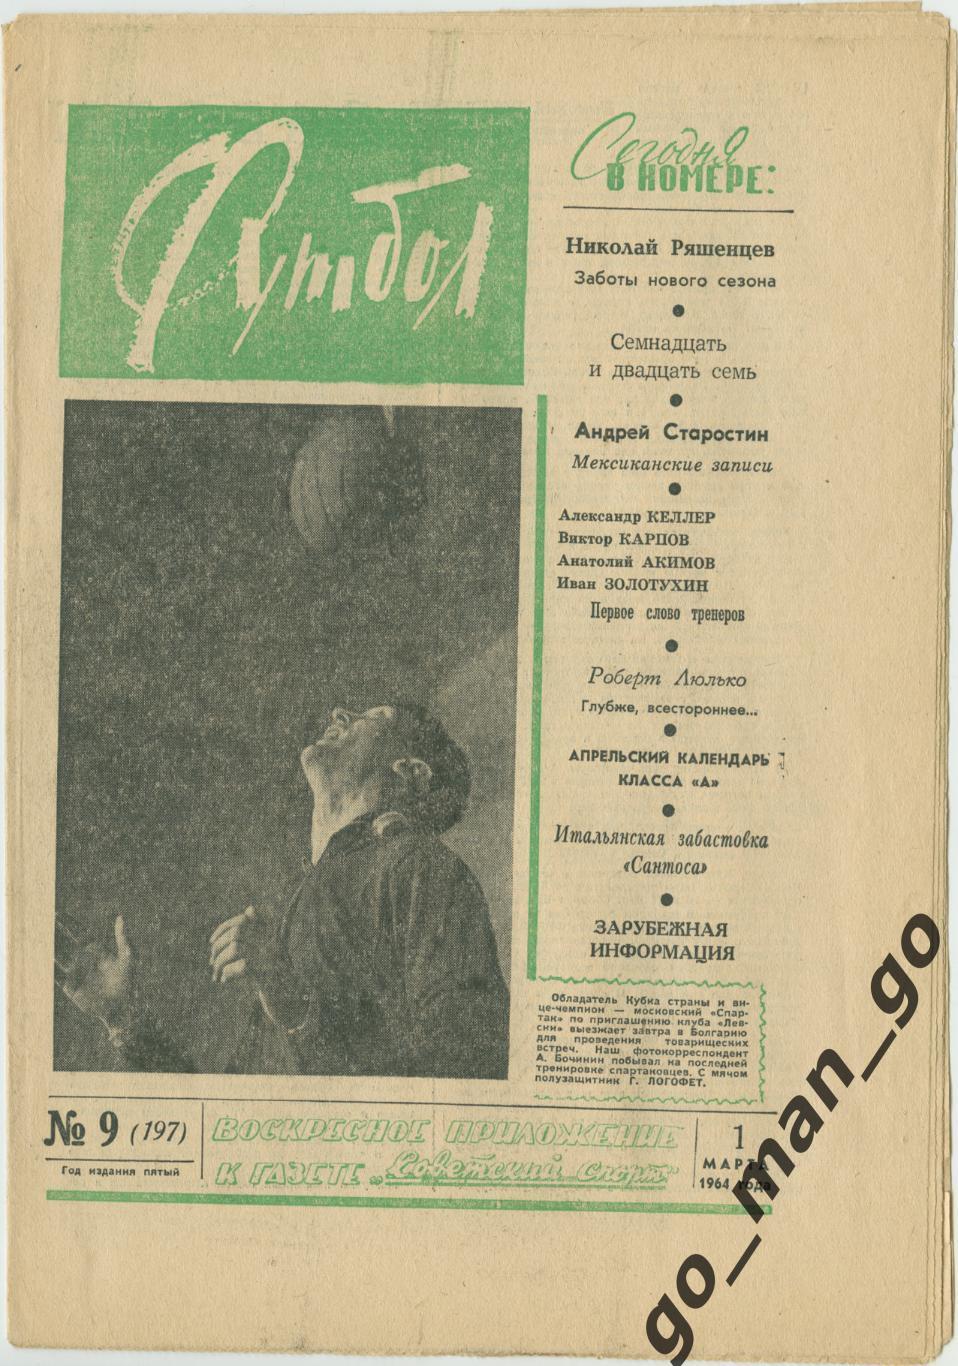 Еженедельник Футбол 1964, № 9.